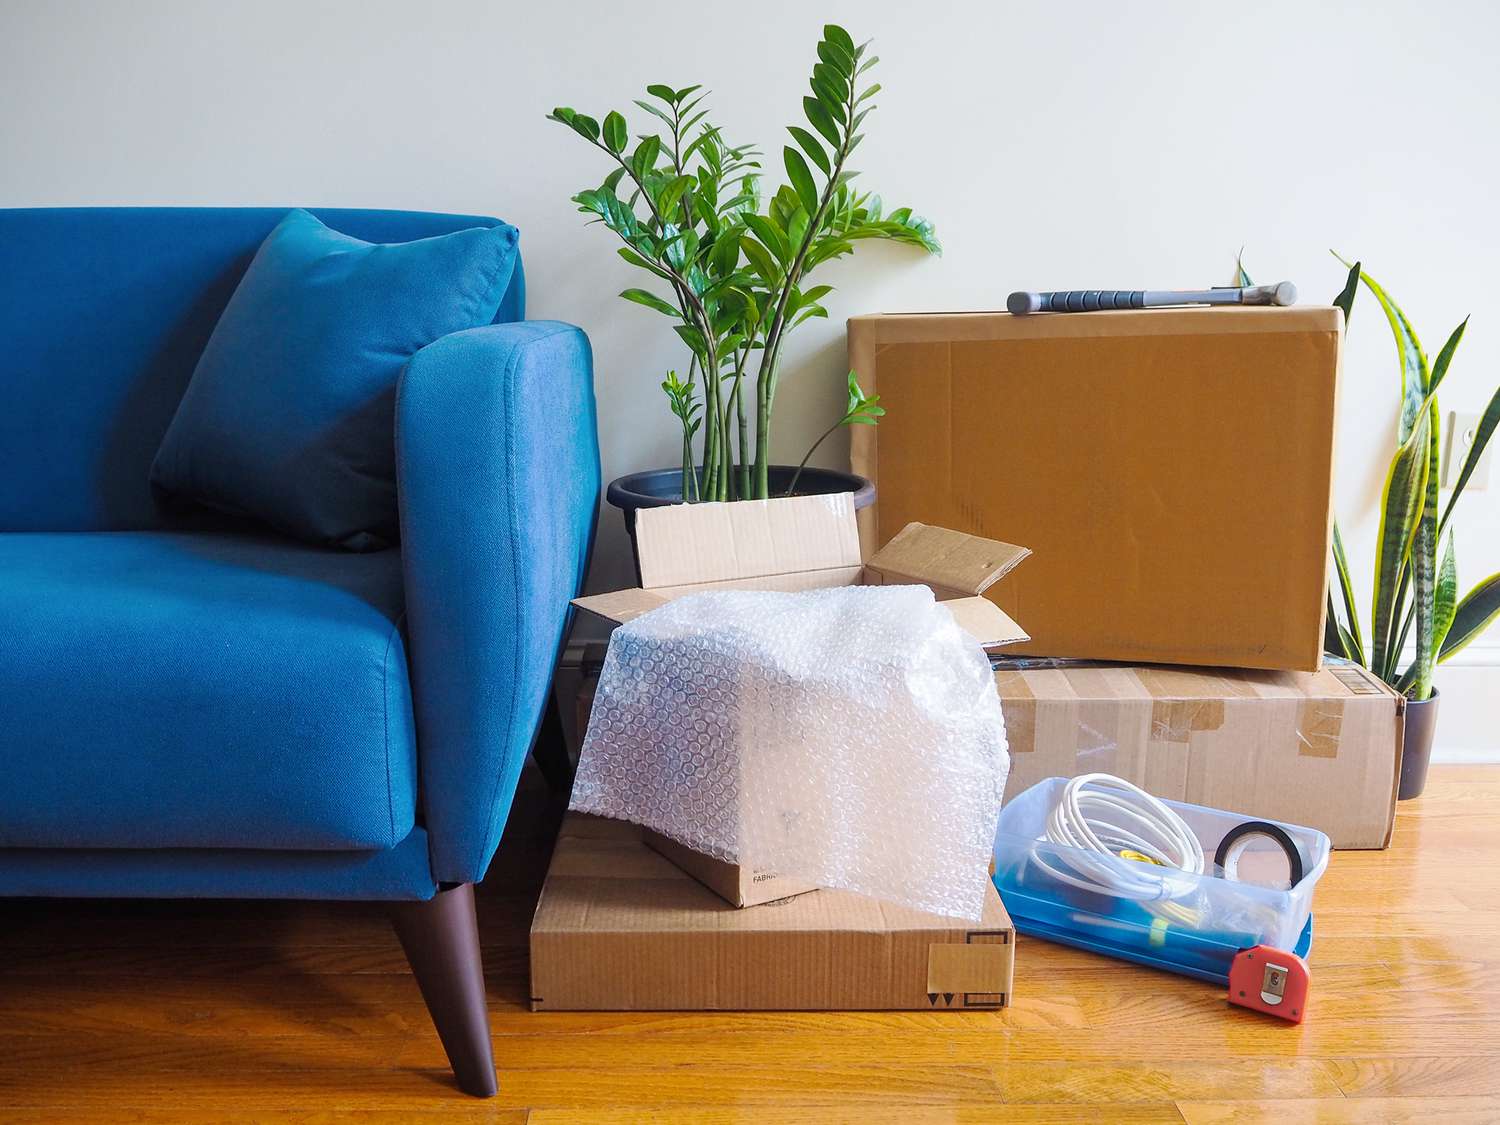 Sofá azul ao lado de caixas de mudança, plantas domésticas e ferragens 